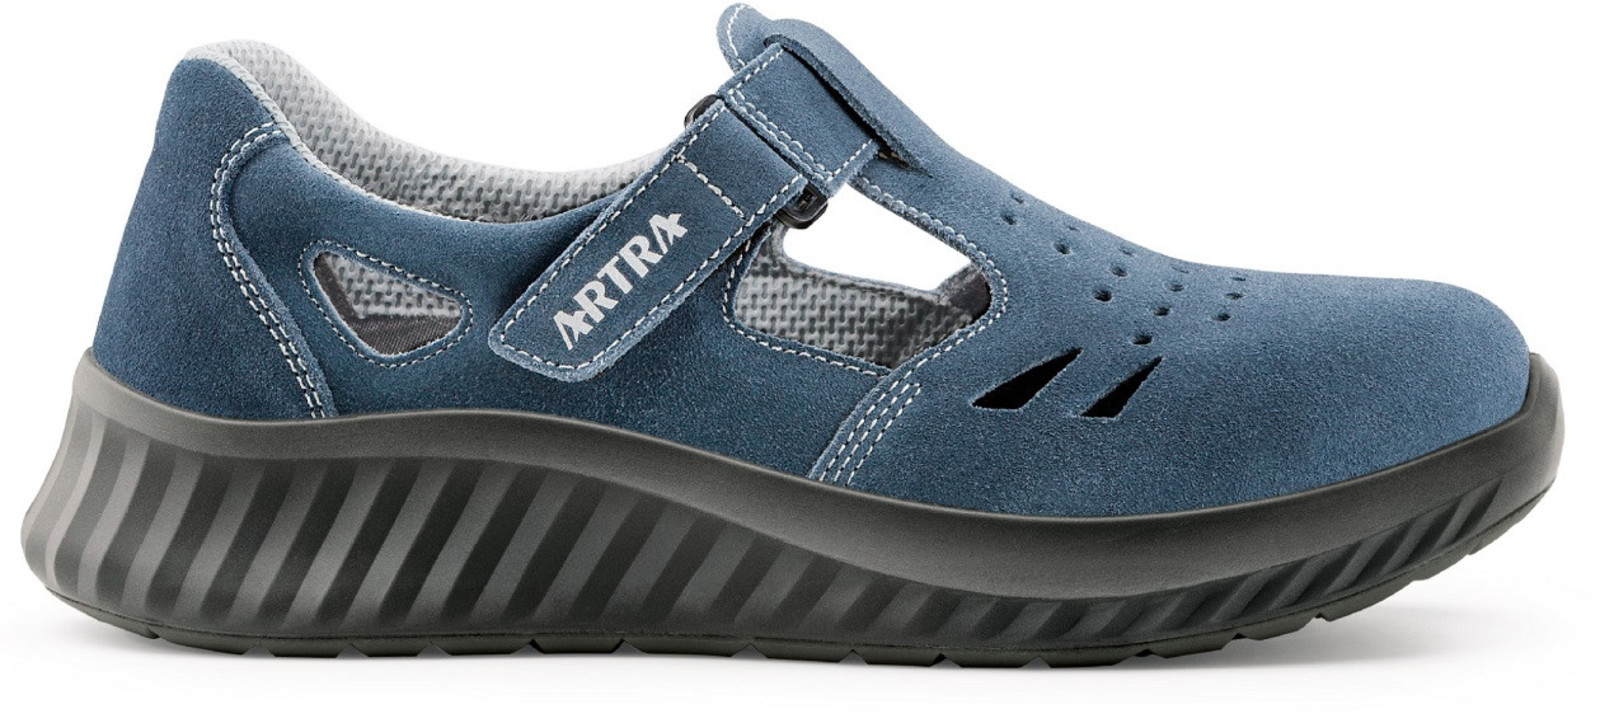 Bezpečnostné sandále Artra Armen 9007 9360 S1 - veľkosť: 41, farba: modrá